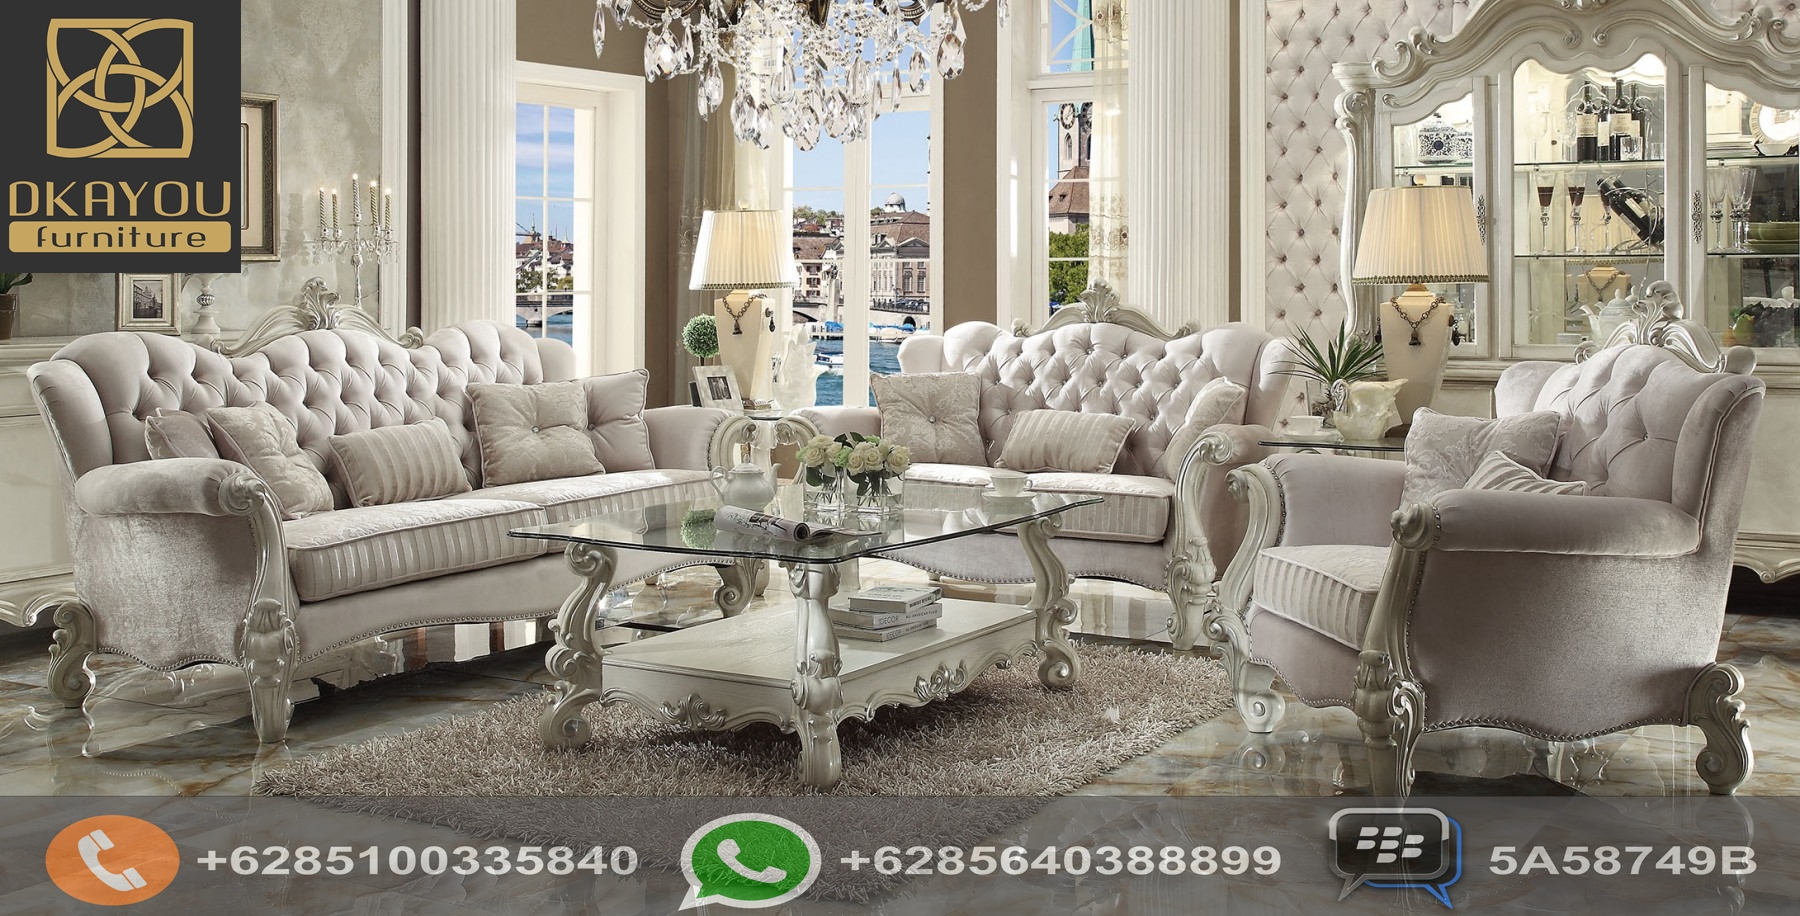 Set Sofa Ruang Tamu Mewah Klasik Model Baru Putih Roman Dkayou